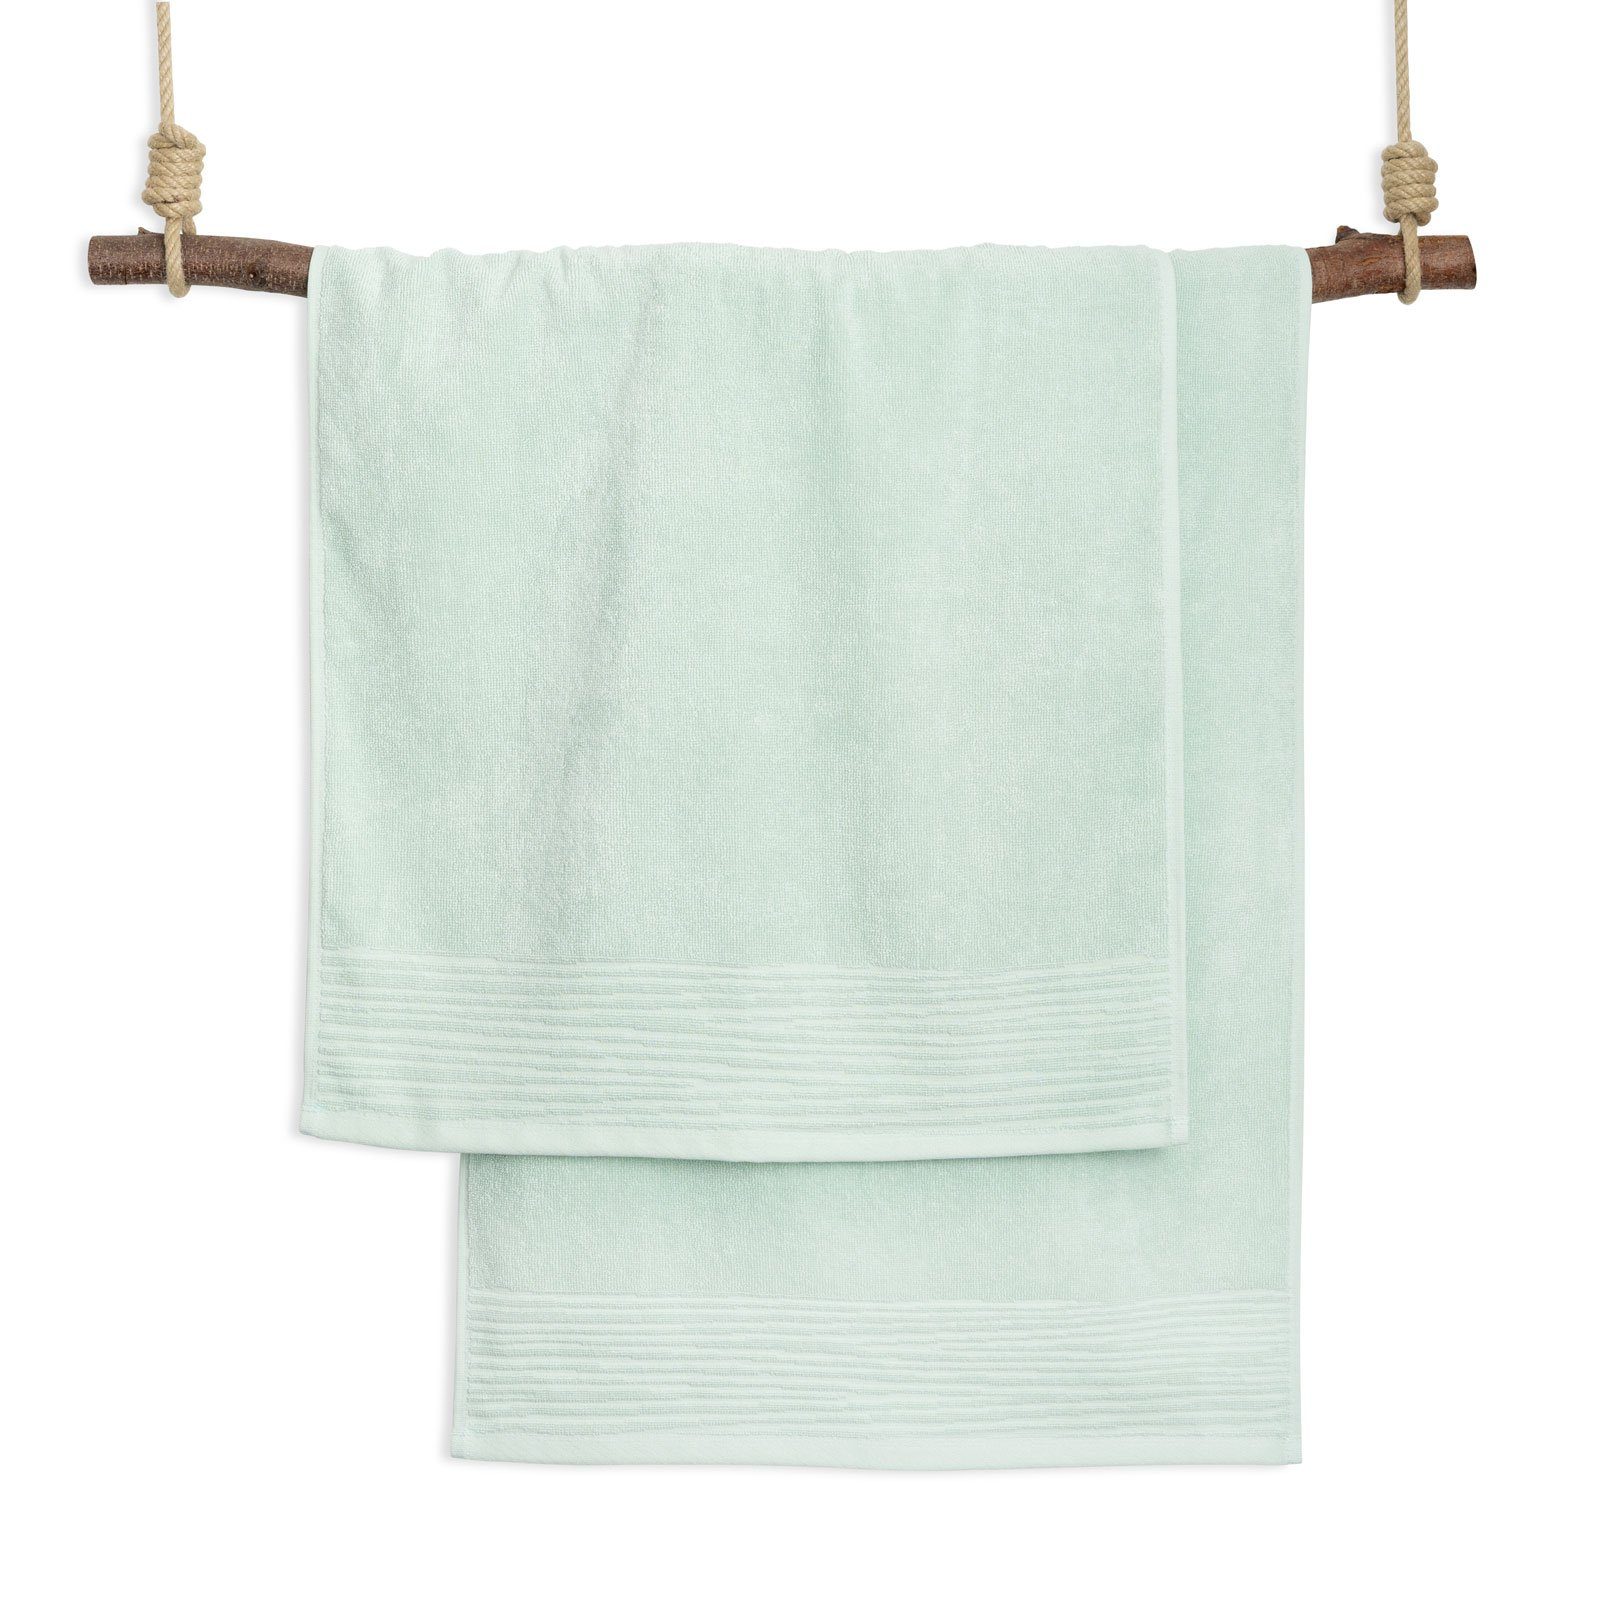 2x Mint Hand Morning Set Towel Handtücher The Essential Kushel